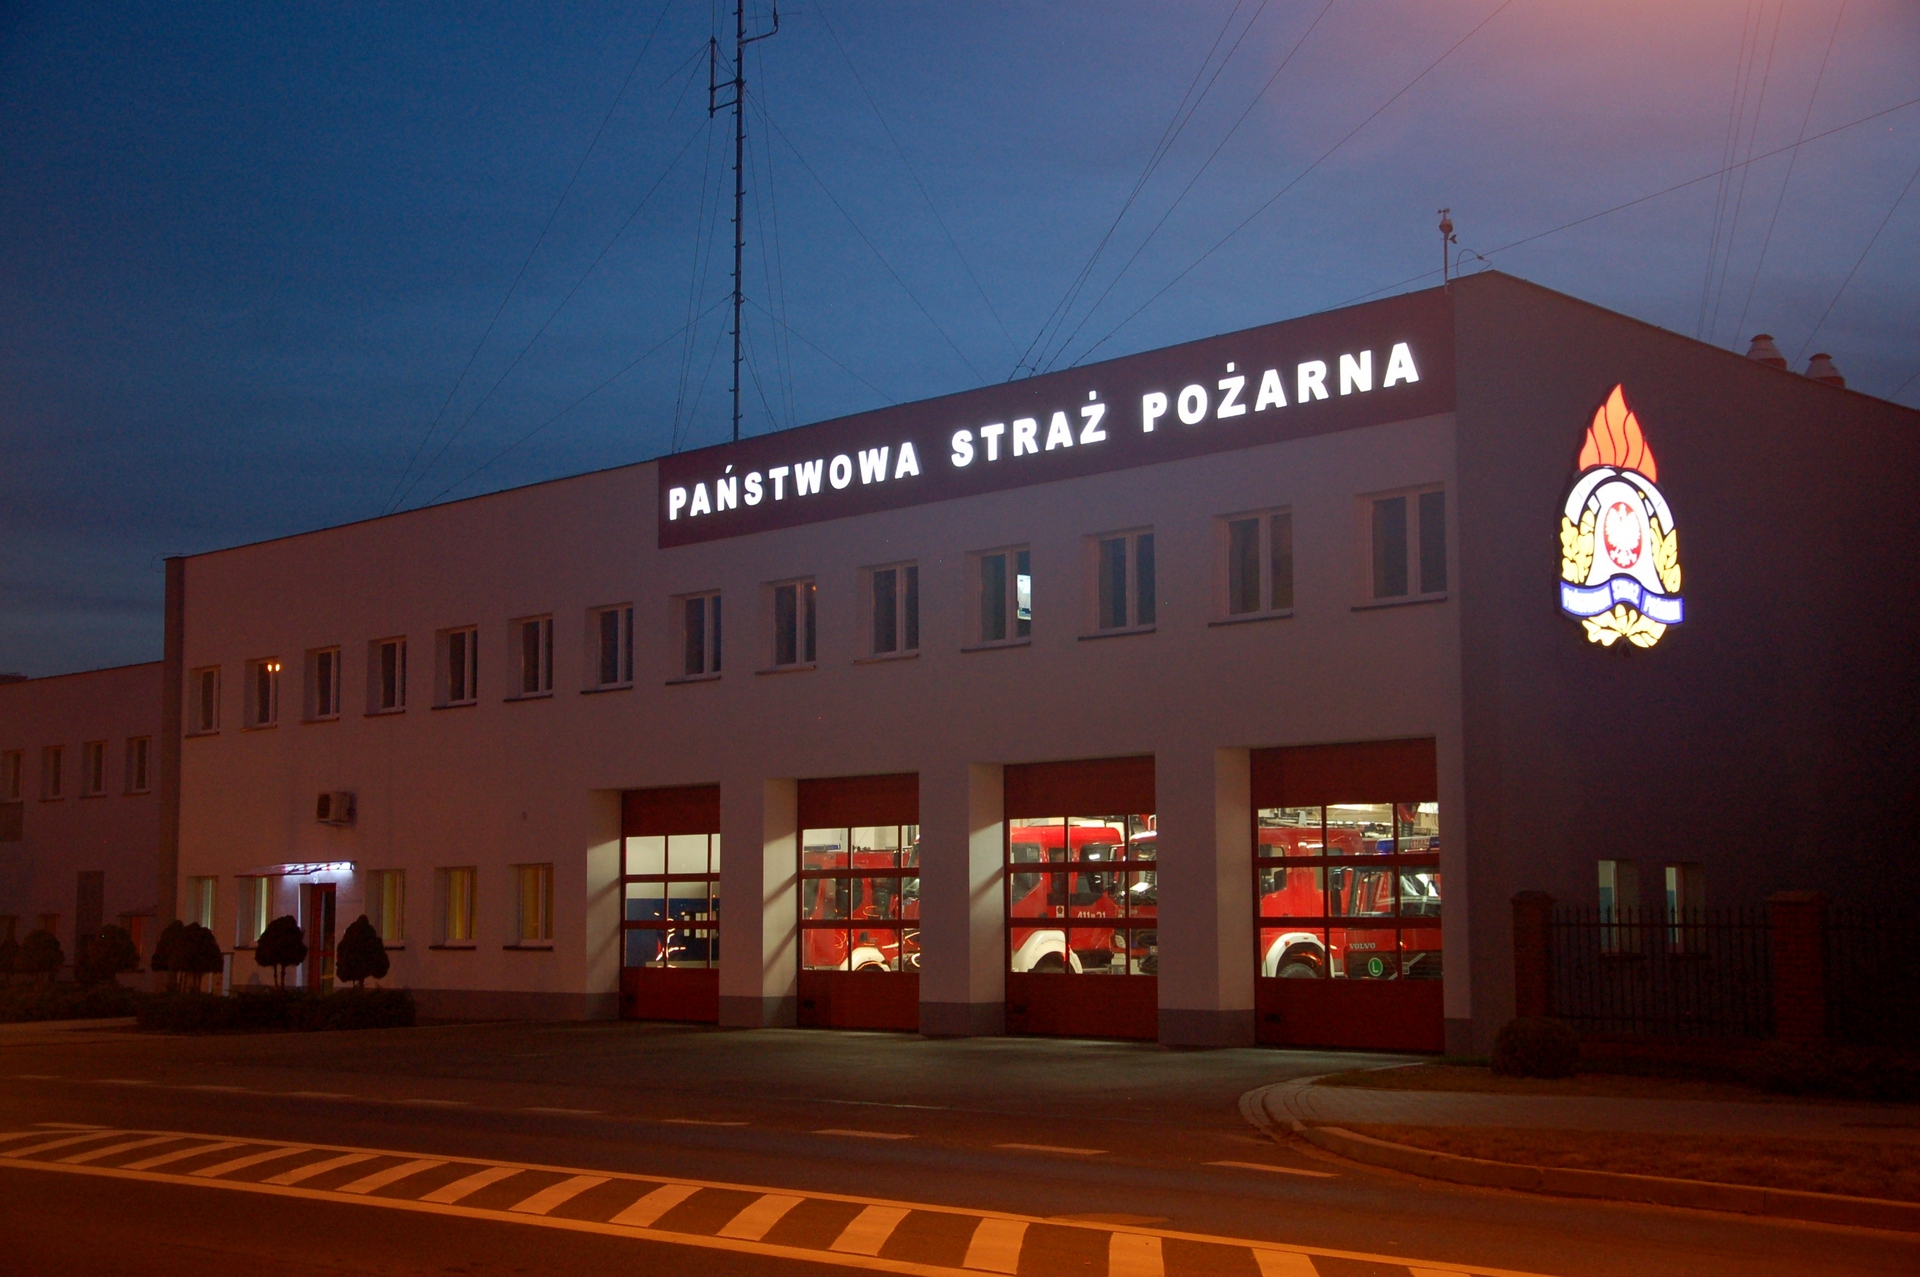 Zdjęcie przedstawia budynek Komendy Powiatowej PSP w Brodnicy od strony ulicy Sienkiewicza po zmierzchu. Na budynku podświetlony napis Państwowa Straż Pożarna oraz logo PSP. W przeszklonych wrotach garażowych widoczny oświetlone pojazdy Jednostki Ratowniczo-Gaśniczej.
